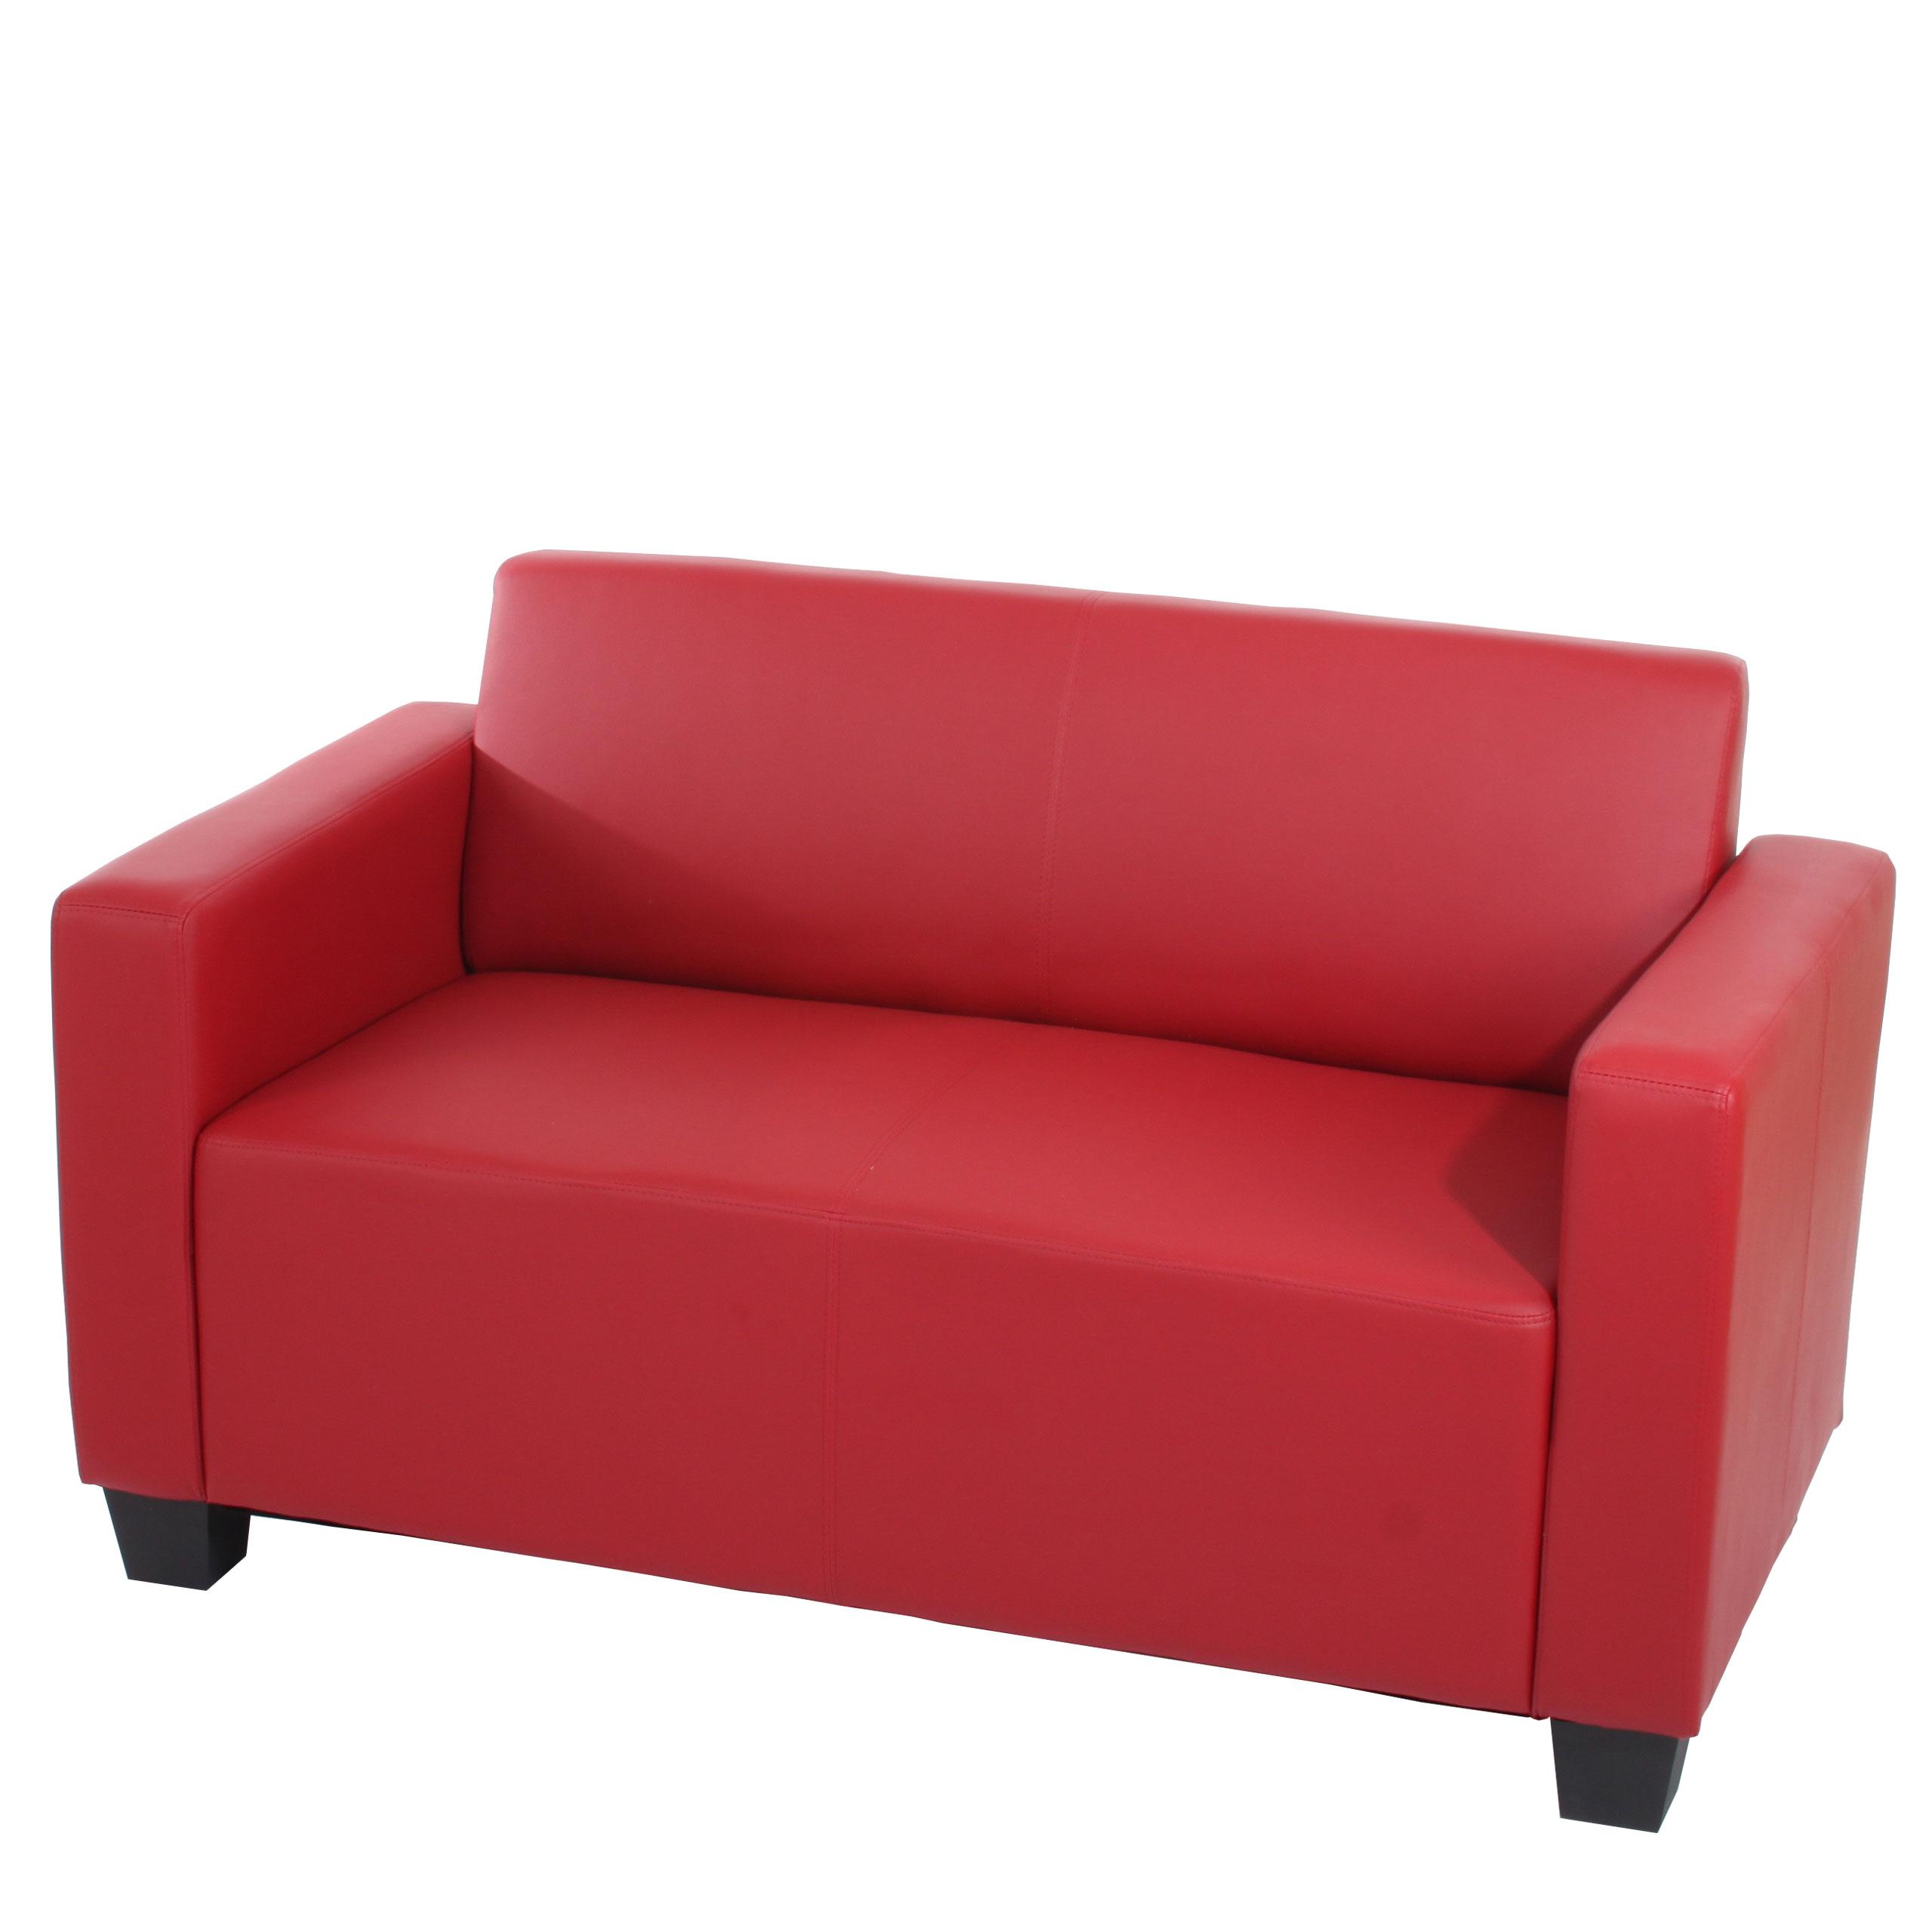  Sofa RODDY, Zweisitzer. Elegantes Design, sehr bequem, Leder, Farbe Rot